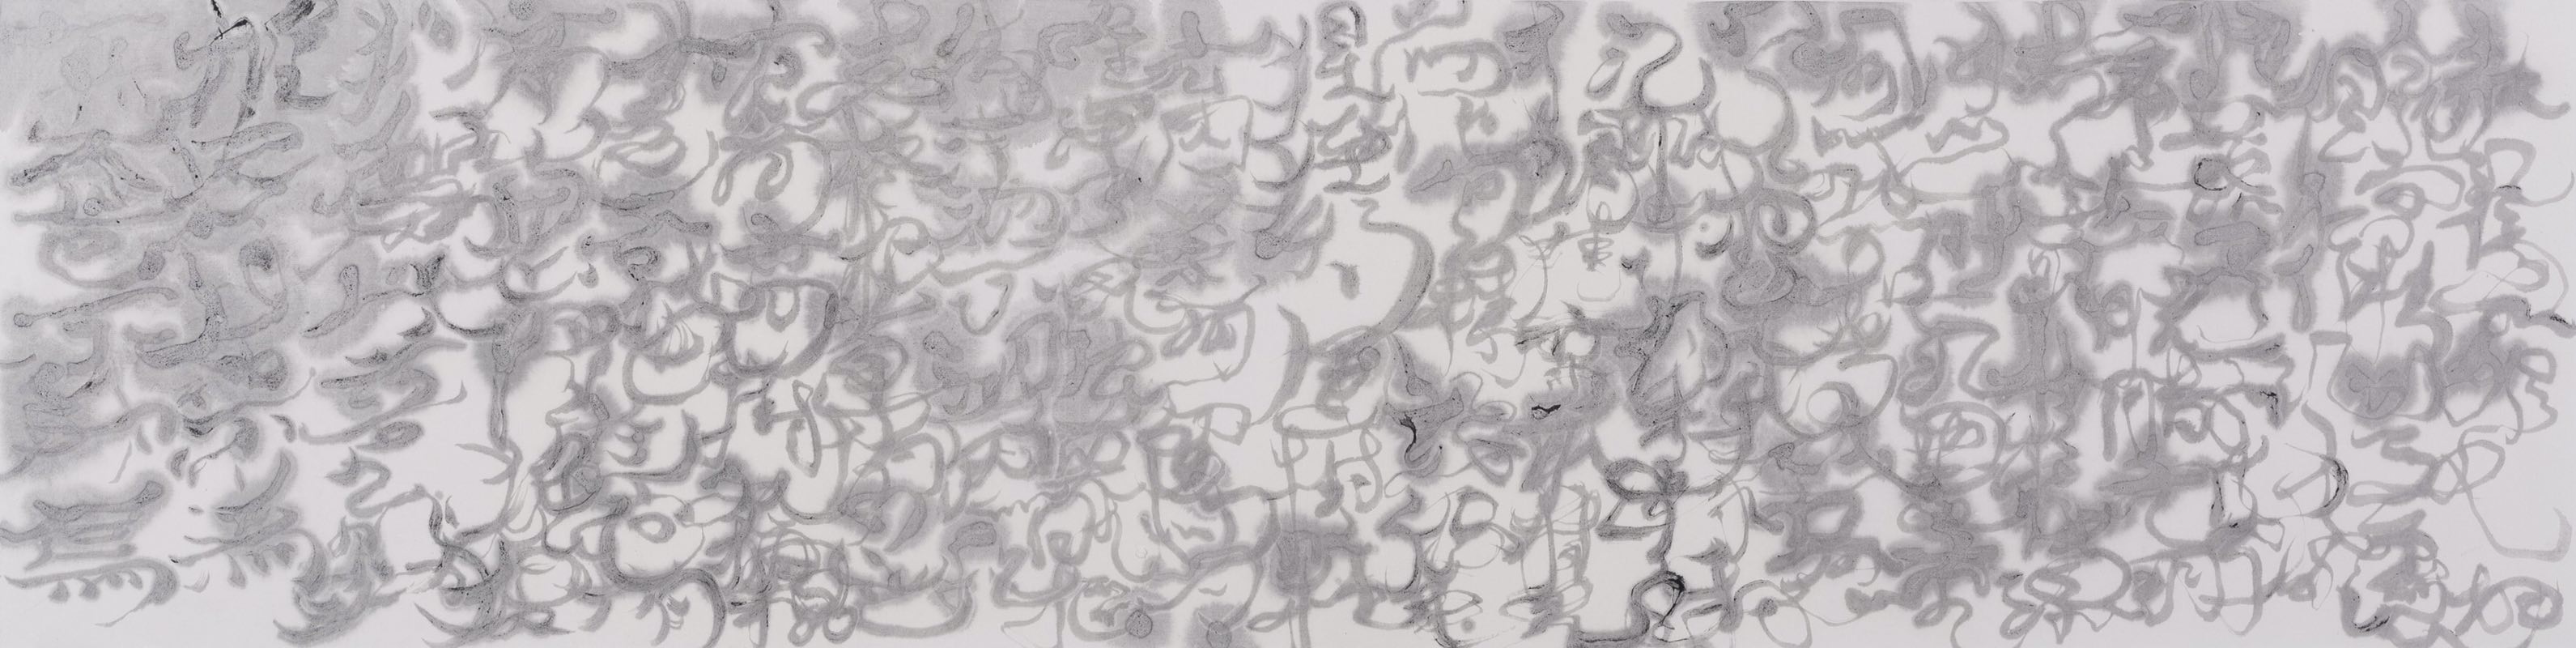 陶艾民, 鸟书43号, 旧宣纸, 墨, 丙烯银, 139x35cm, 2016